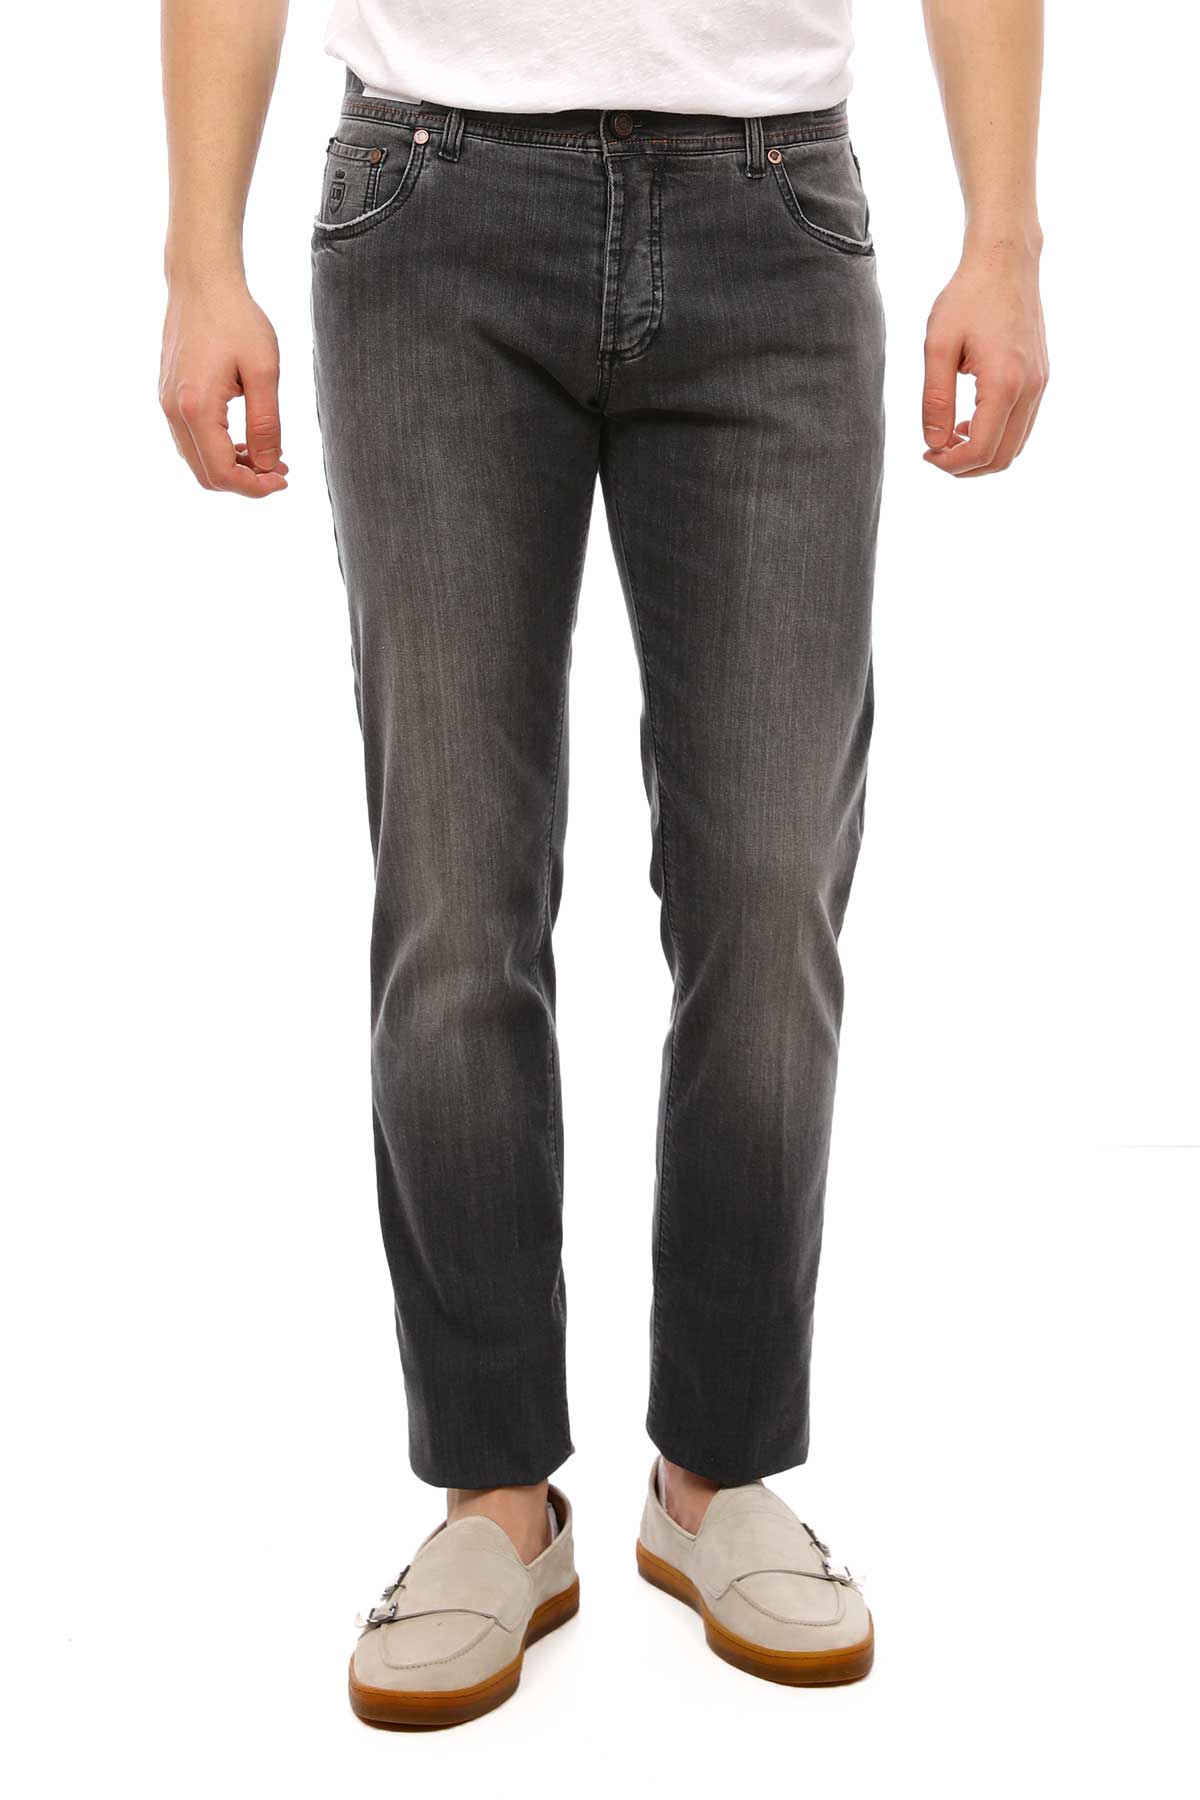 Richard J. Brown Jeans-Libas Trendy Fashion Store